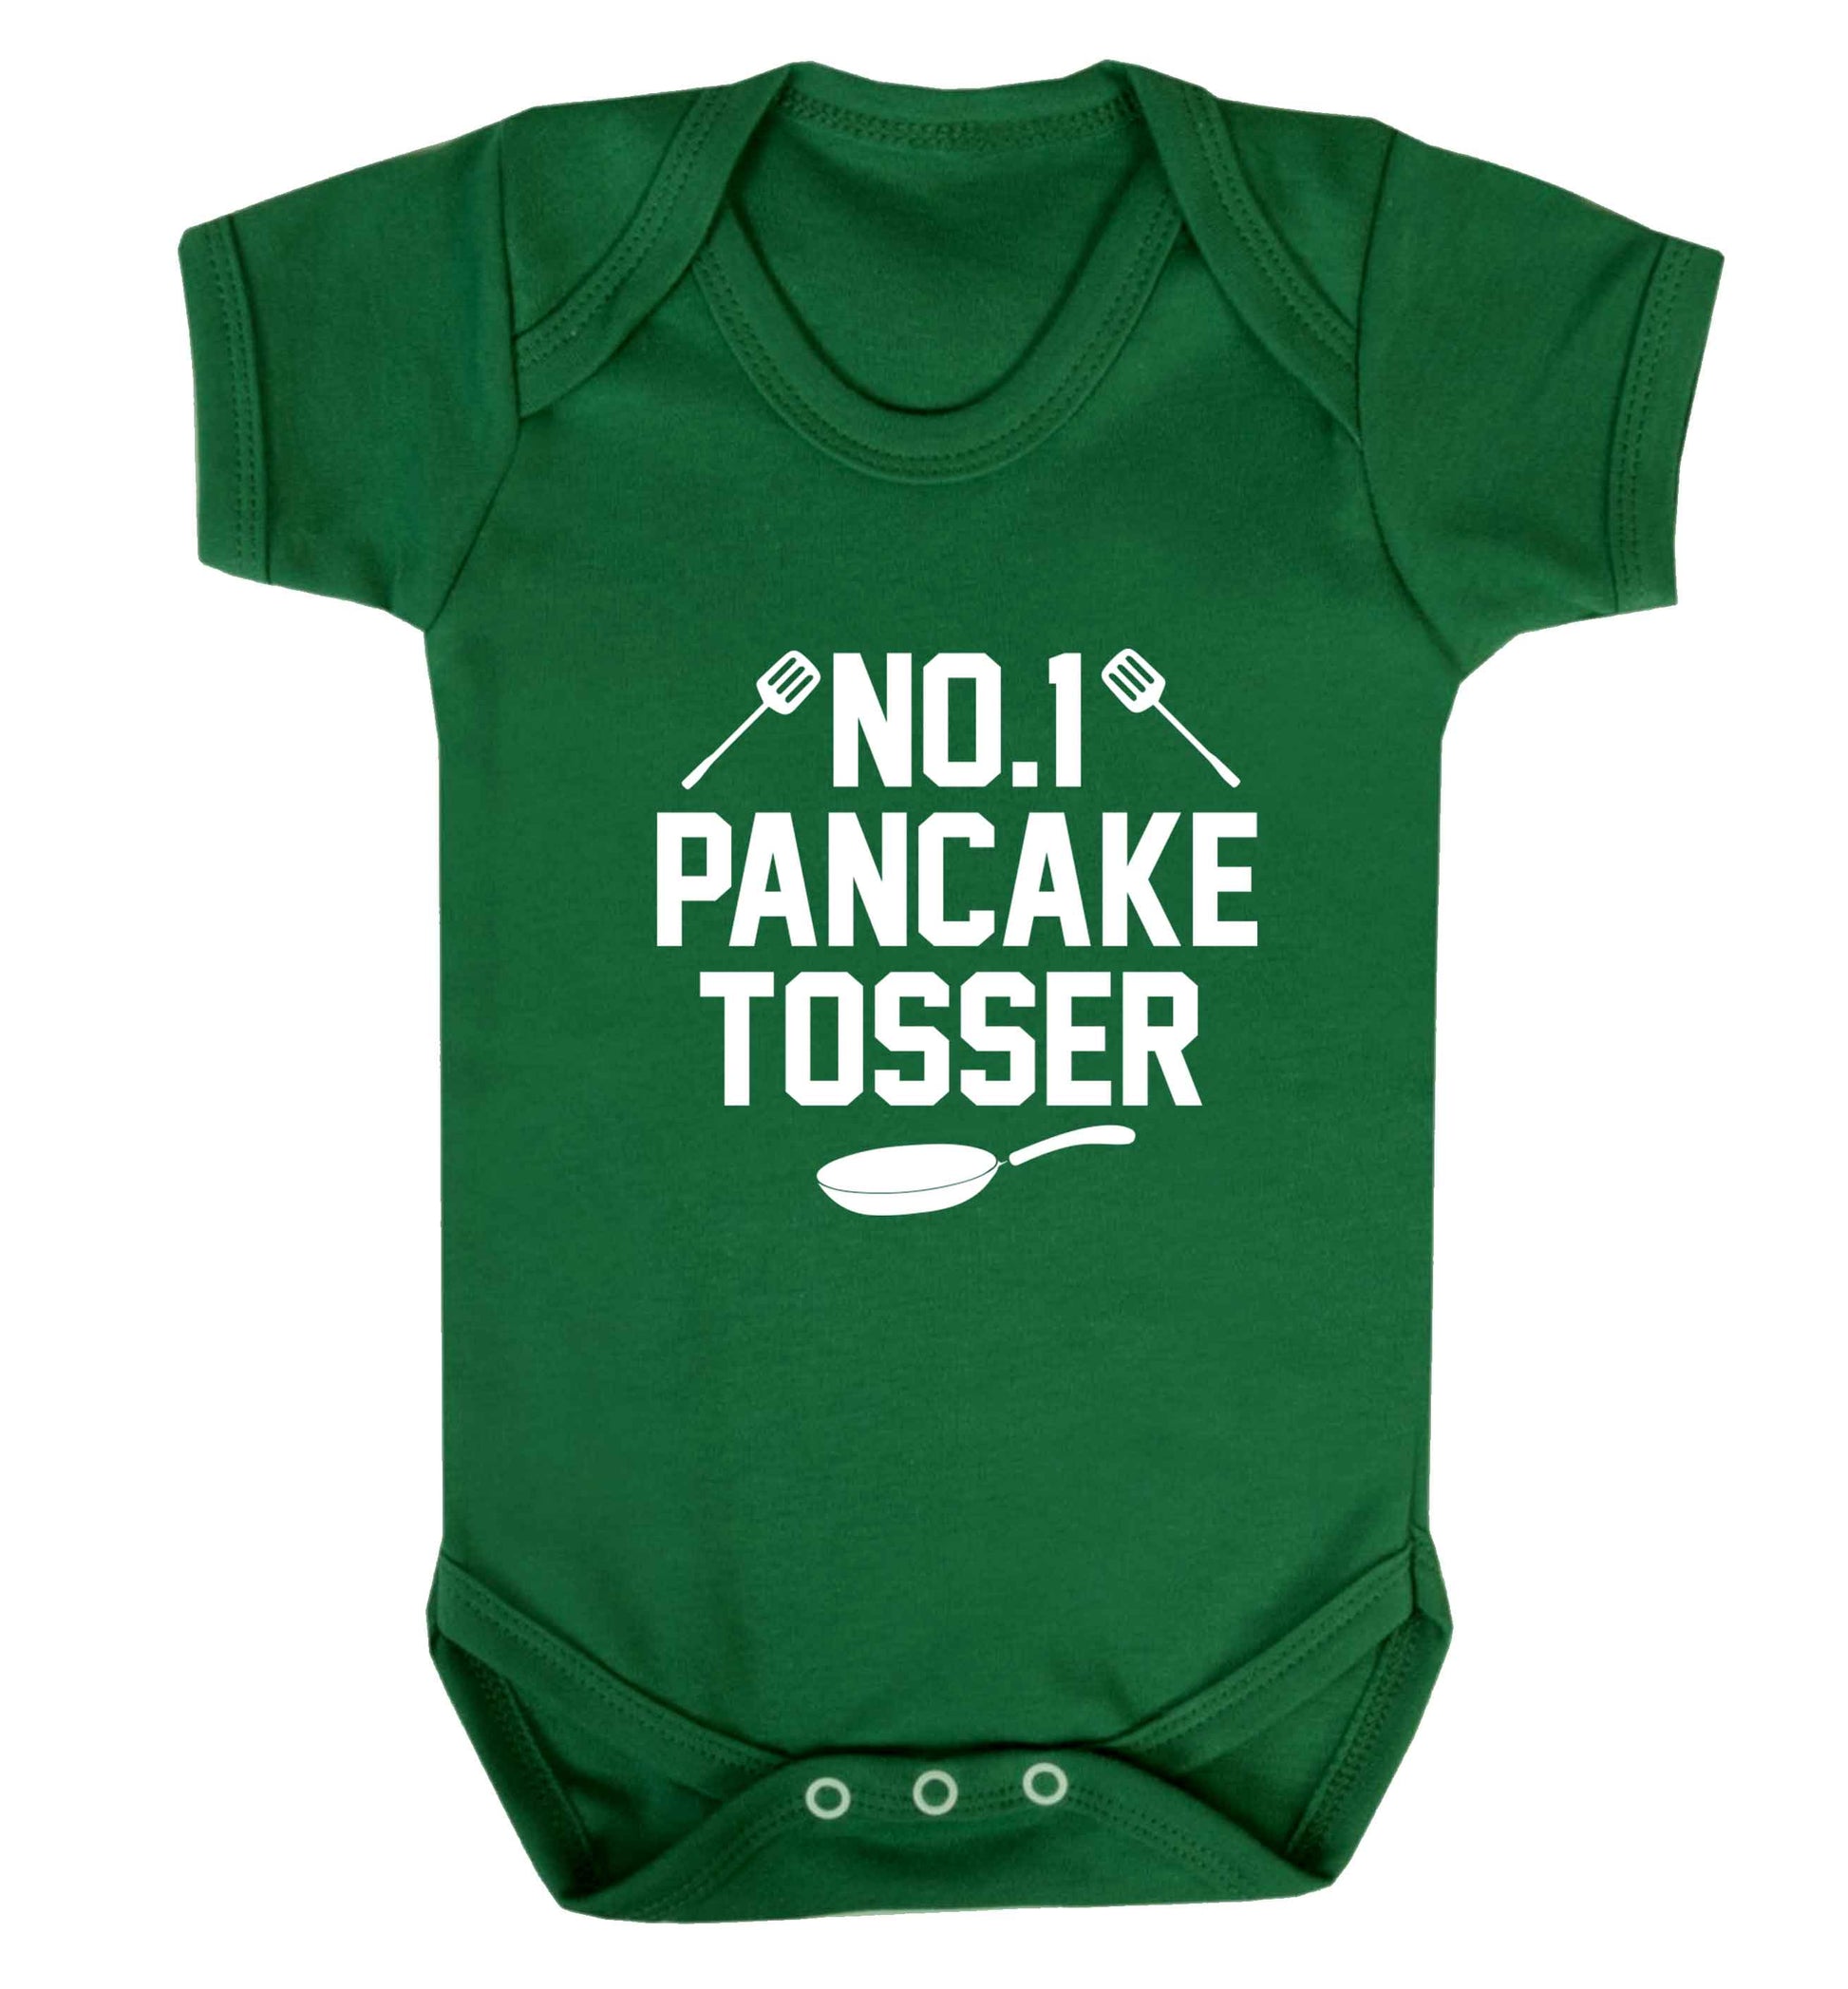 No.1 Pancake tosser baby vest green 18-24 months